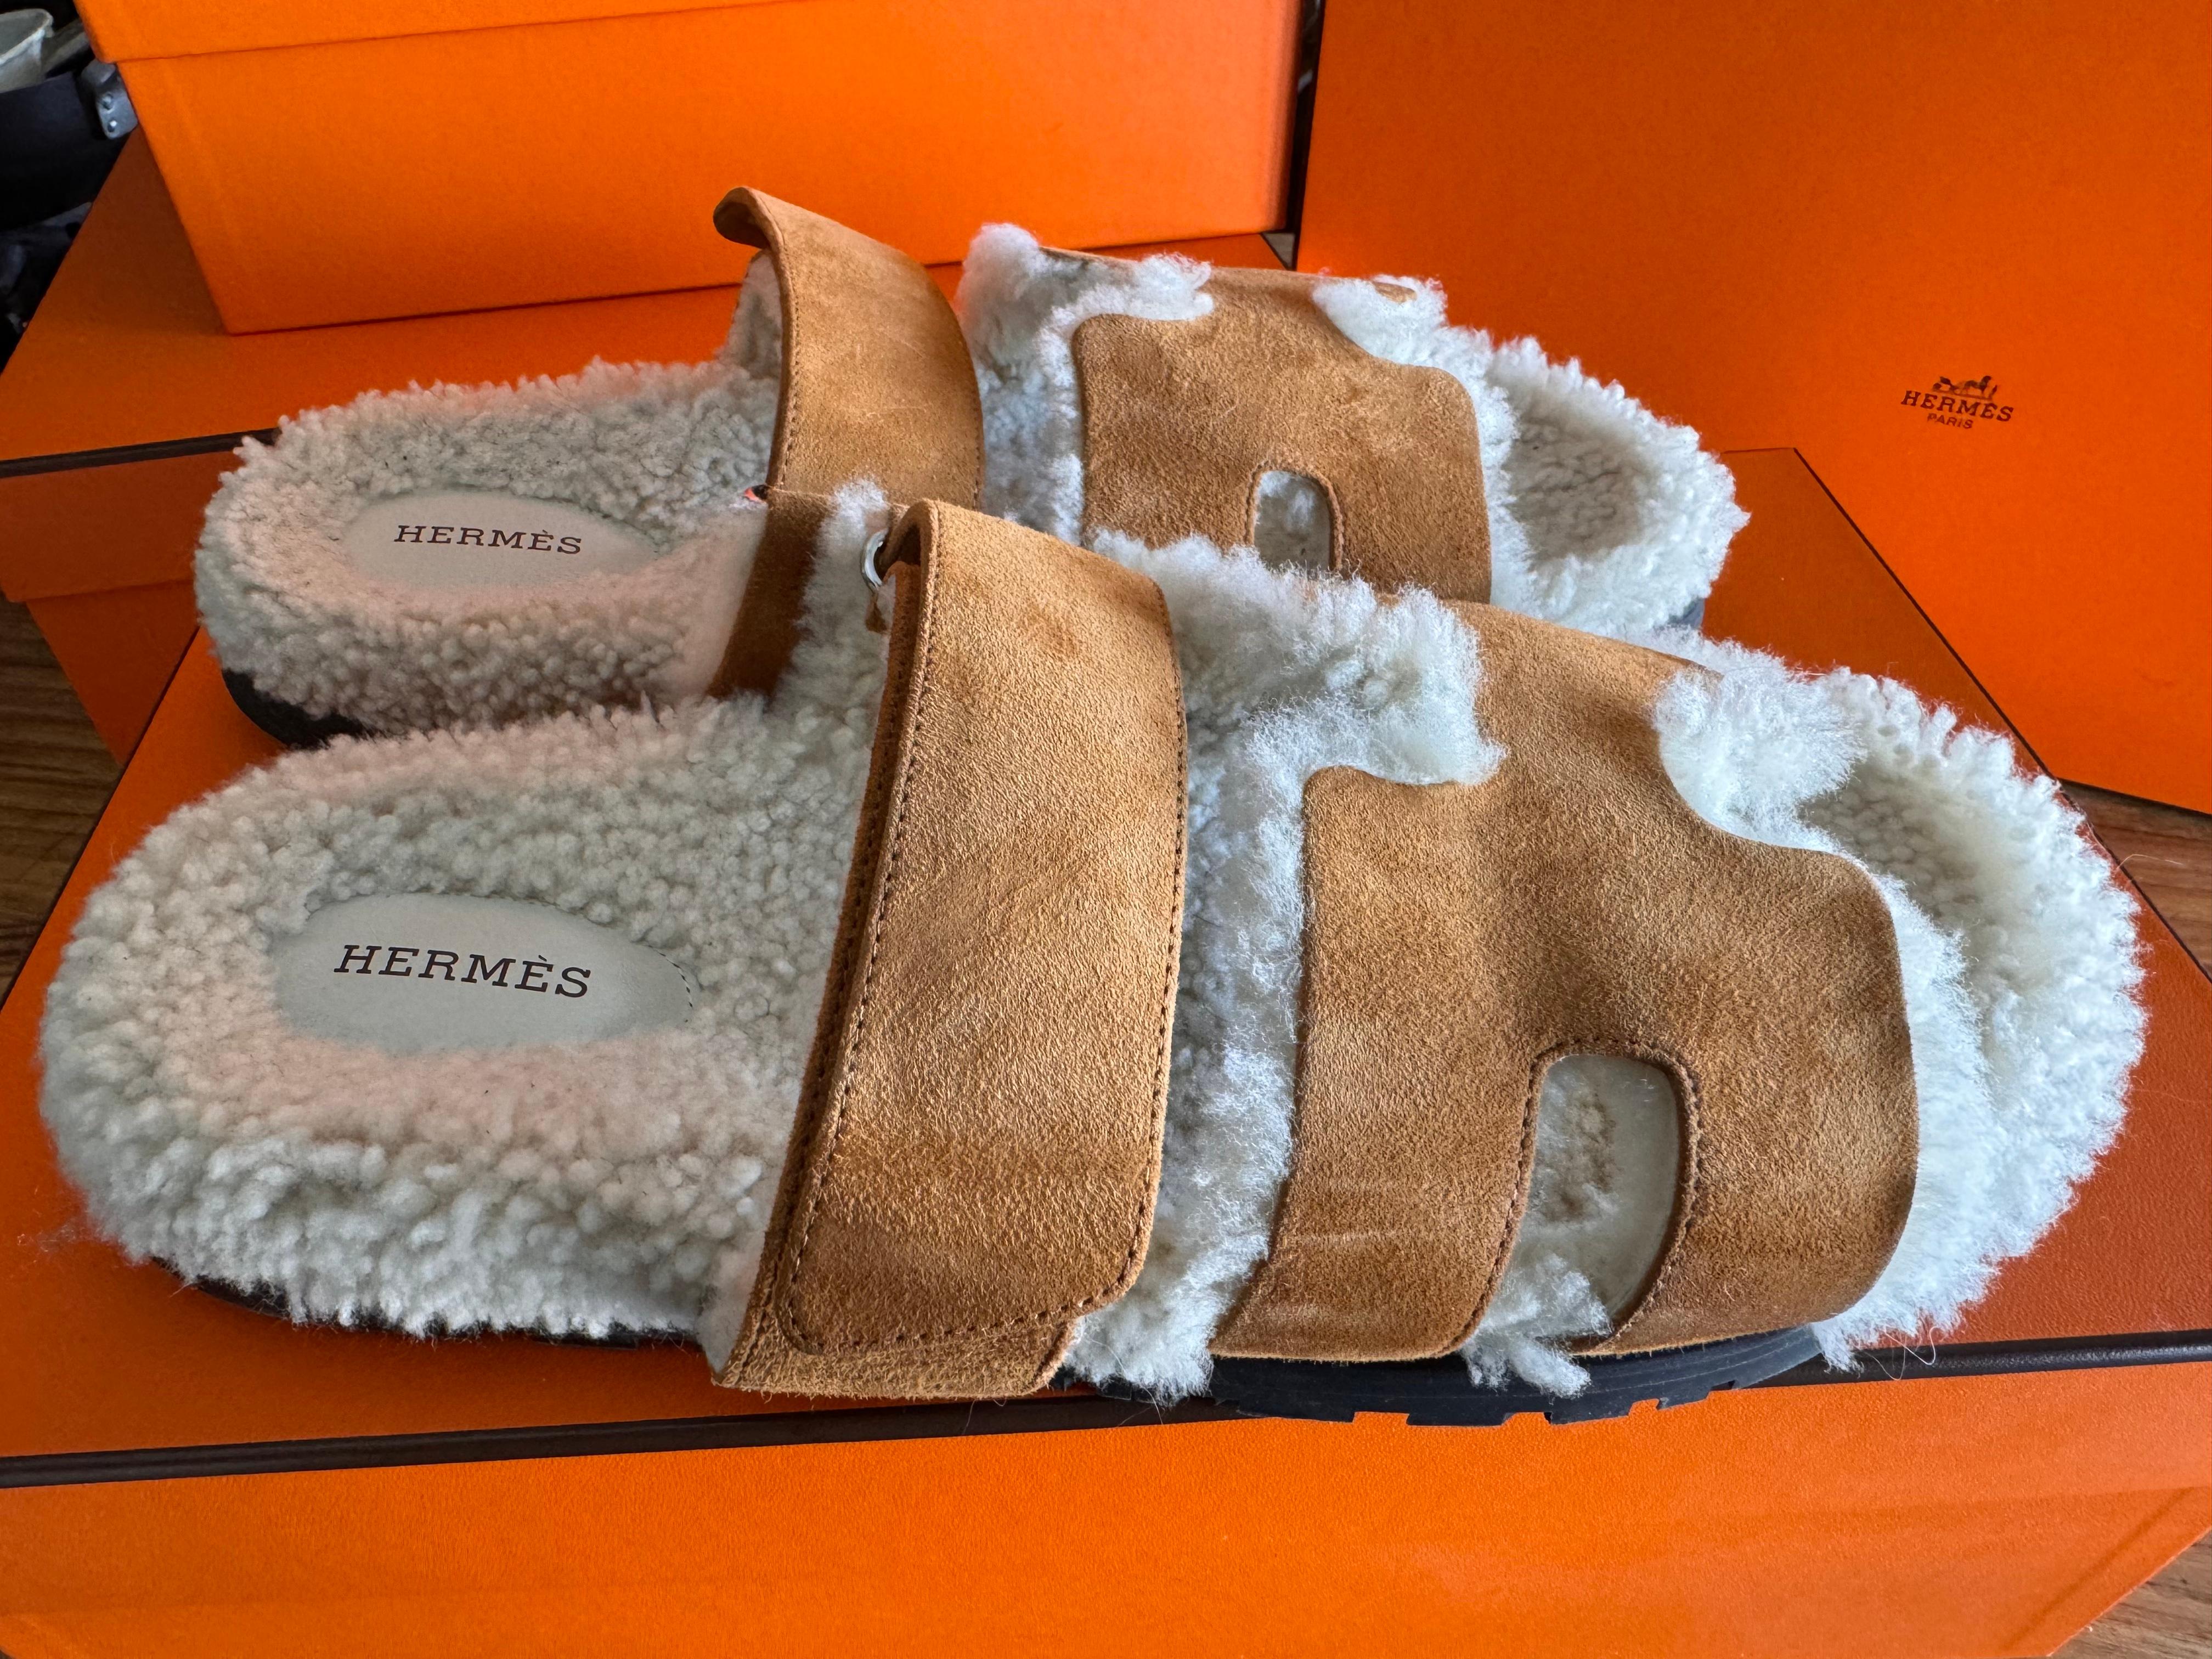 Die Hermes Shearling-Sandale in Größe 41 ist nicht nur eine praktische Wahl für alle, die Komfort und Wärme suchen, sondern dient auch als gewagtes modisches Statement im aktuellen Trend. Aus hochwertigem Shearling-Material gefertigt, strahlen diese